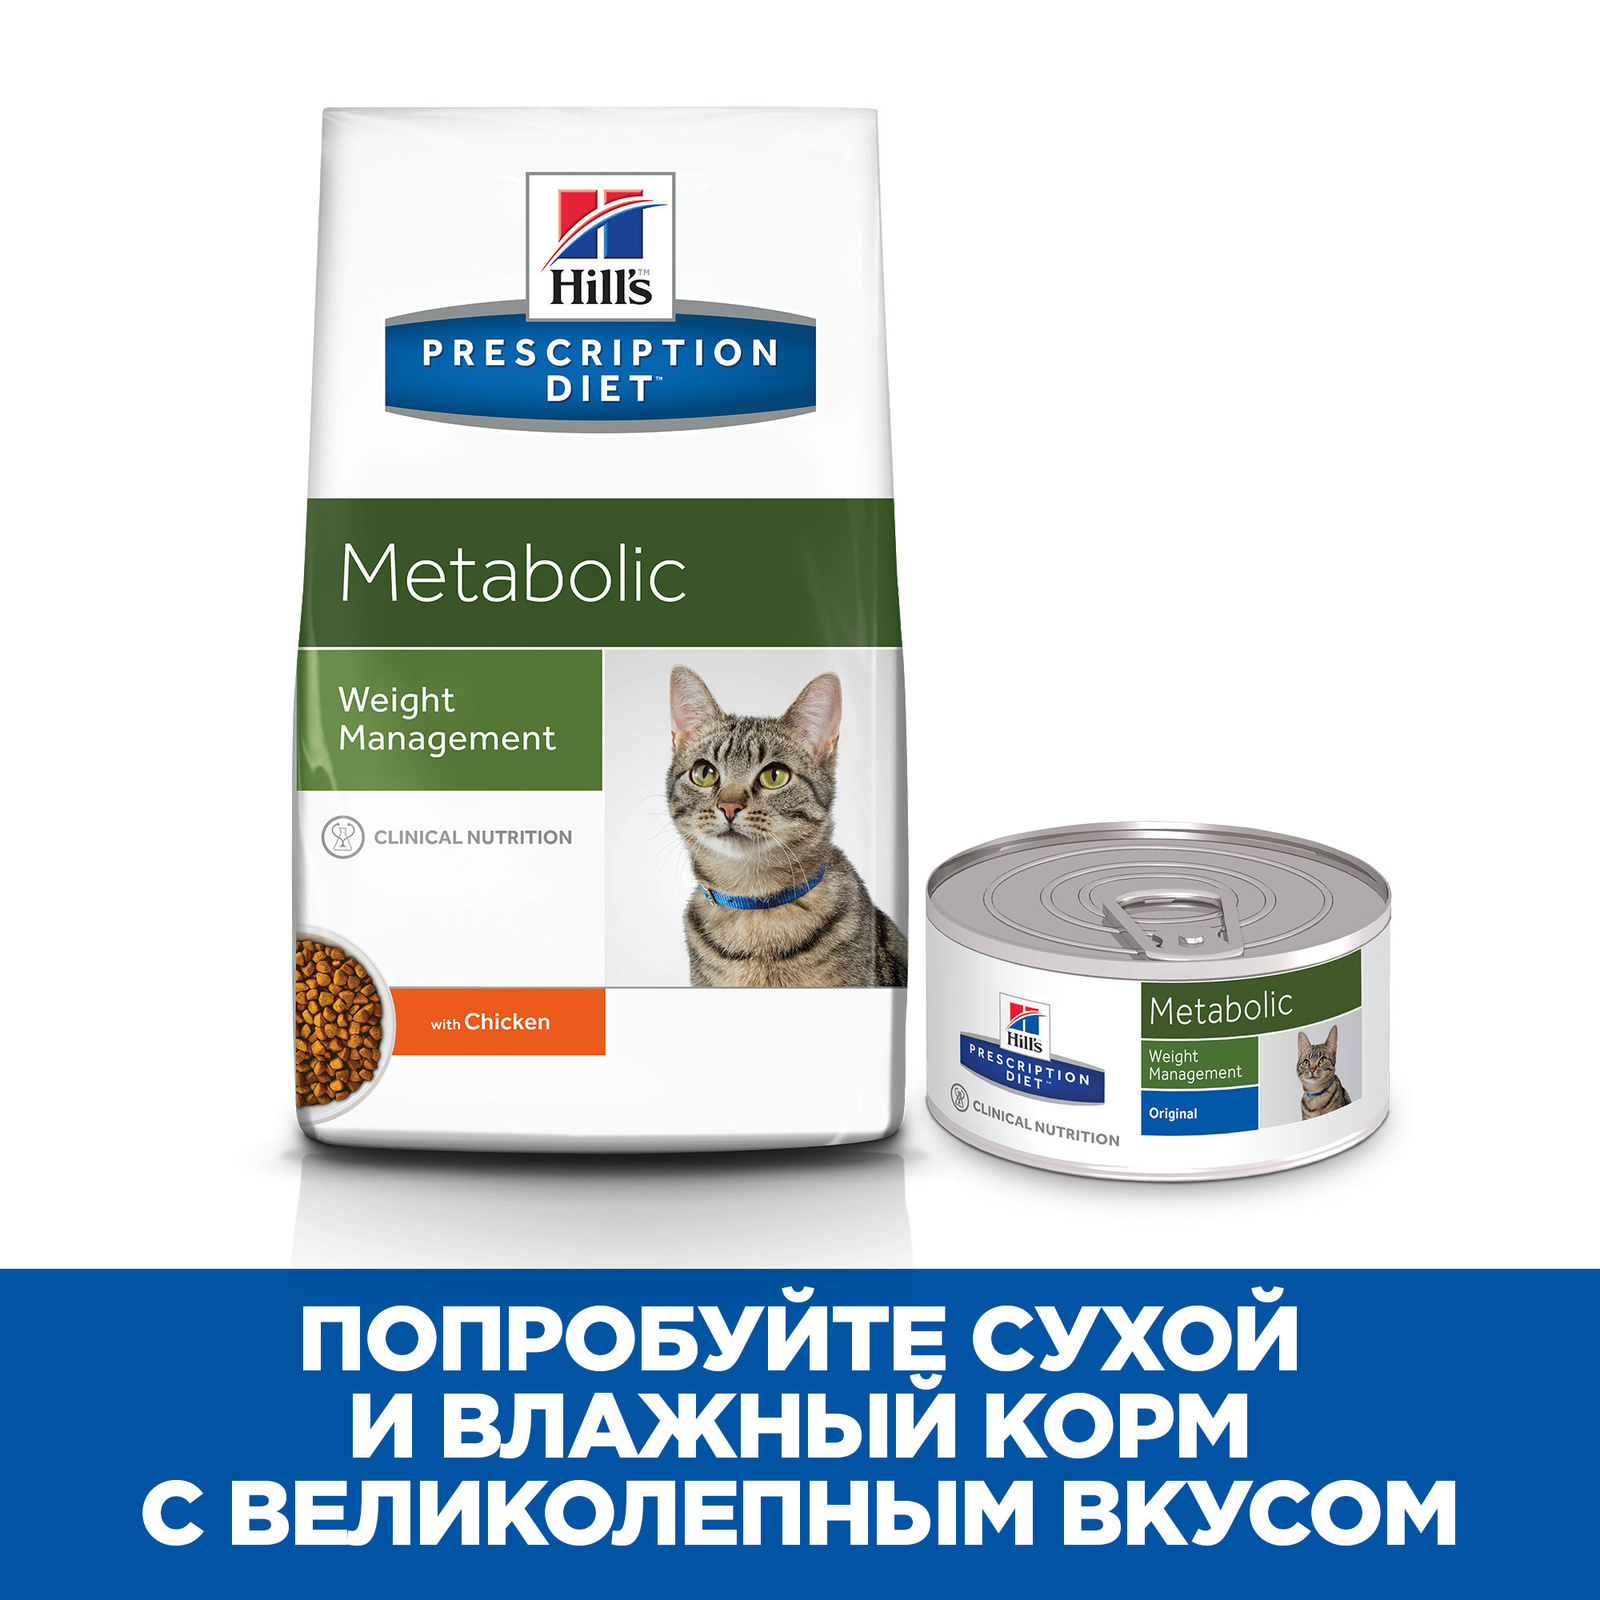 Metabolic сухой диетический для кошек, способствует снижению и контролю веса, с курицей (1,5 кг) Hill's Prescription Diet Metabolic сухой диетический для кошек, способствует снижению и контролю веса, с курицей (1,5 кг) - фото 6